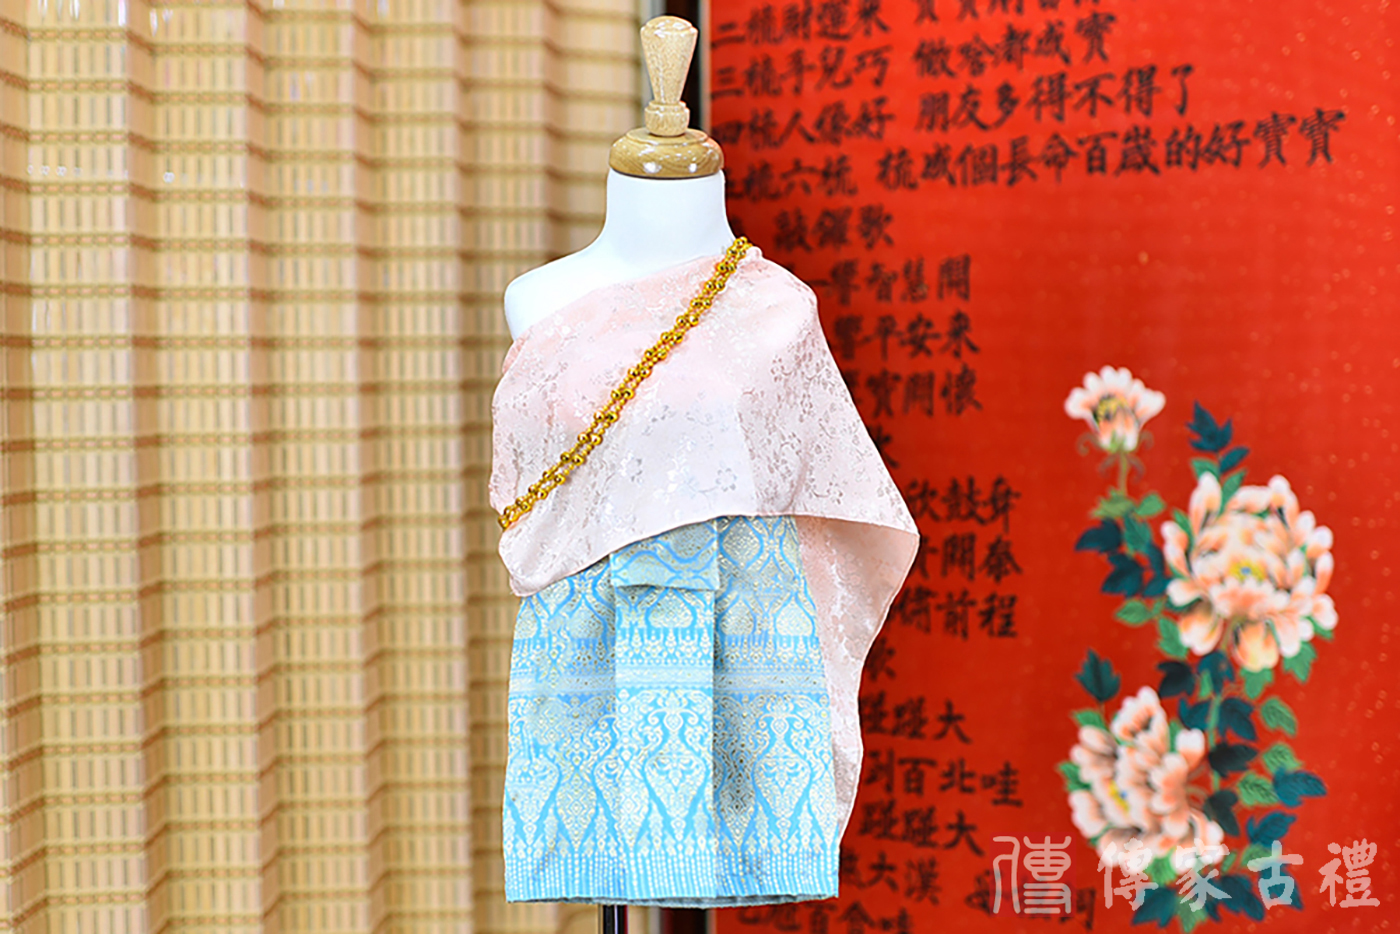 2024-02-19小孩皇室泰服古裝禮服。淺粉色的蕾絲上衣綴以金邊，搭配天藍色傳統泰國圖案裙的泰式古裝禮服。照片集